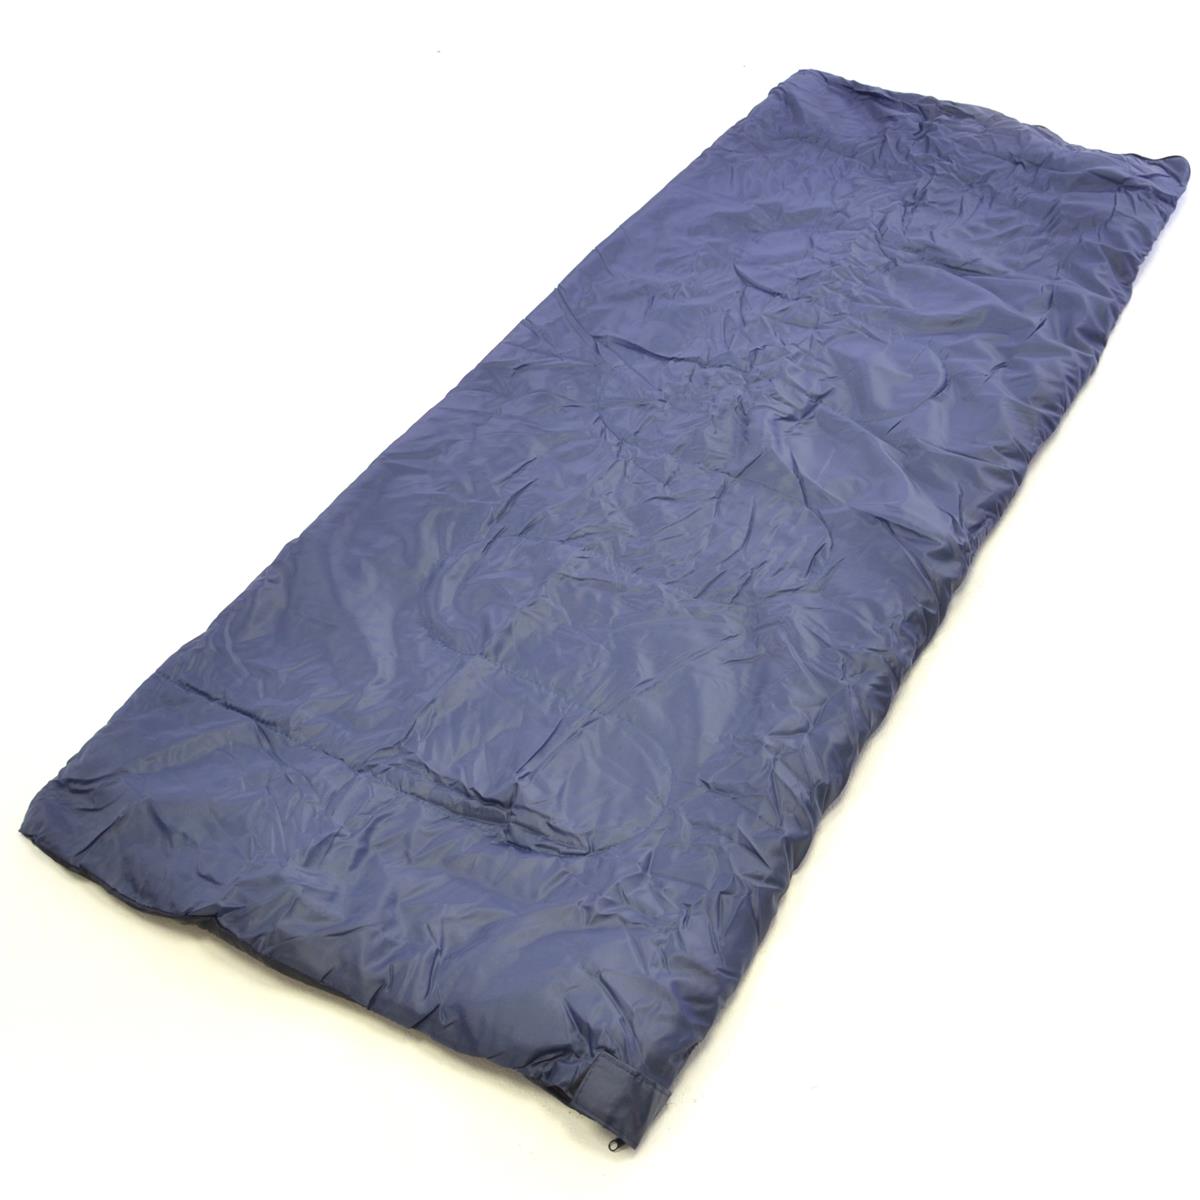 Nexos Schlafsack Taura 190x70 cm 170T Polyester 150g/m² dunkelblau 15-25°C Decke Camping 900g Zelten Schlafsackhülle 